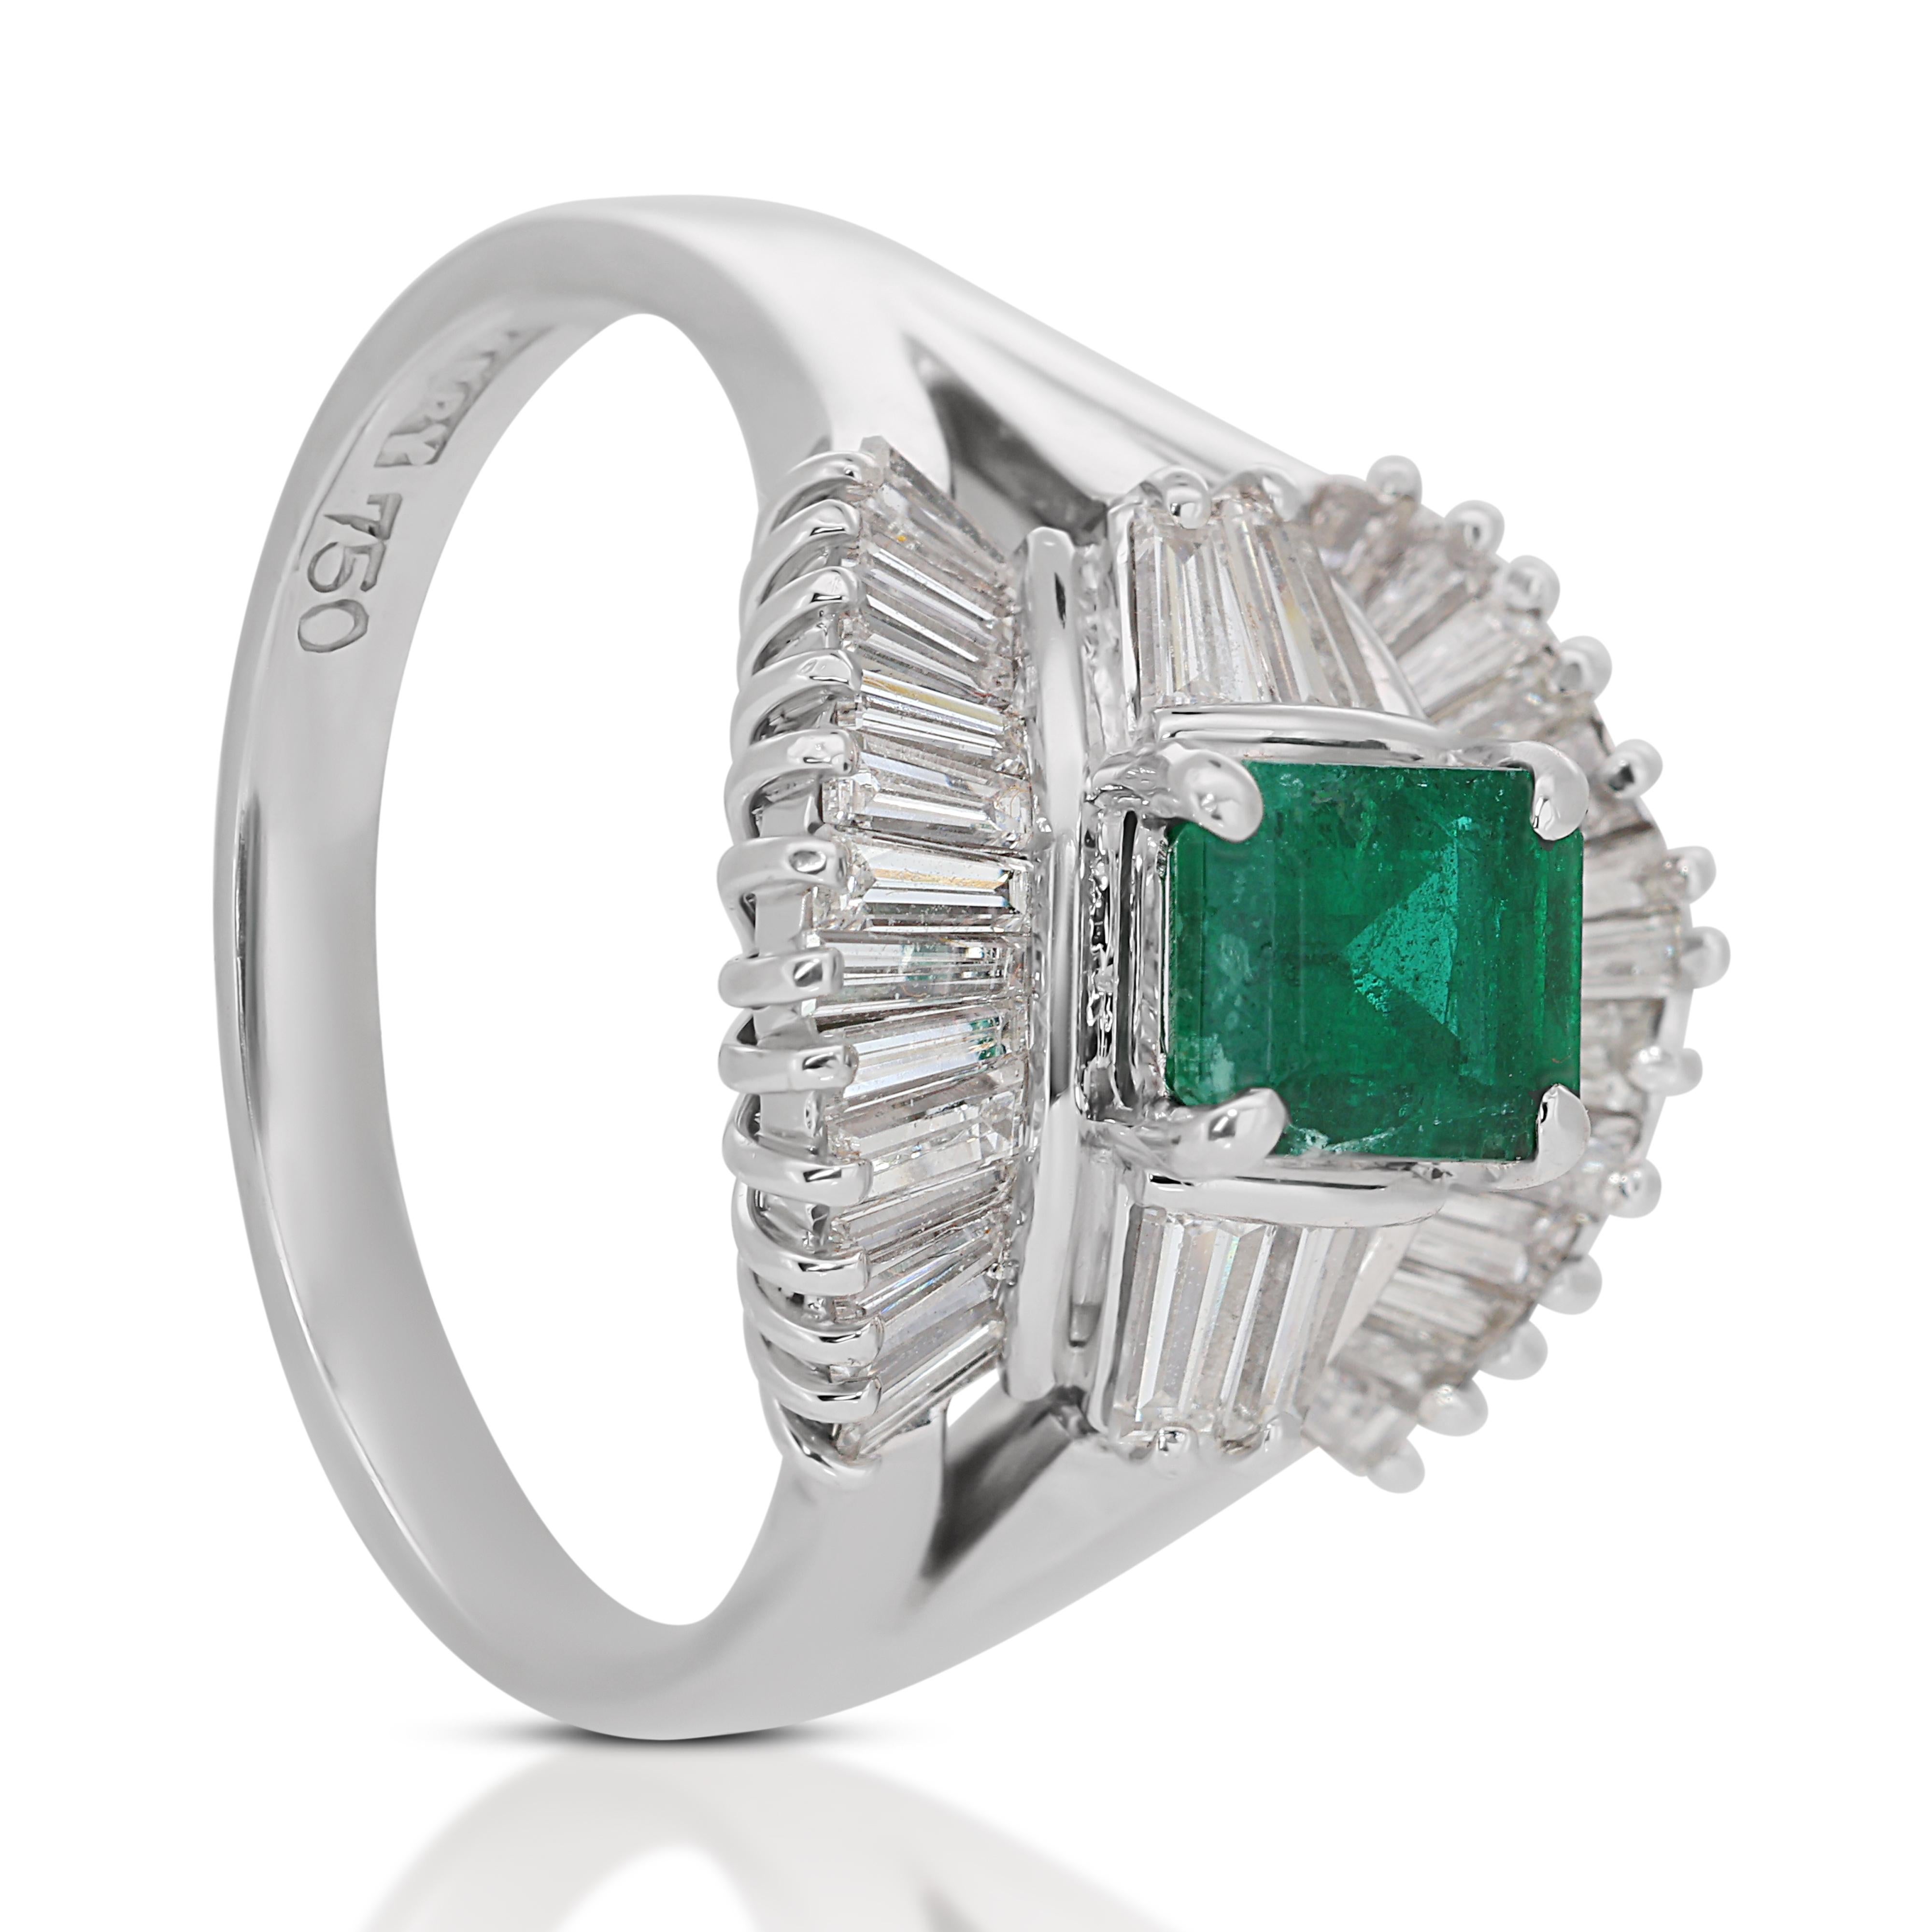 Strahlender 18k Weißgold Smaragd und Diamant Halo Ring w/2,08 ct  - IGI-zertifiziert

Enthüllen Sie die Eleganz dieses Halo-Rings aus 18 Karat Weißgold, der die Anziehungskraft eines klassischen Edelsteins perfekt mit einem modernen Design